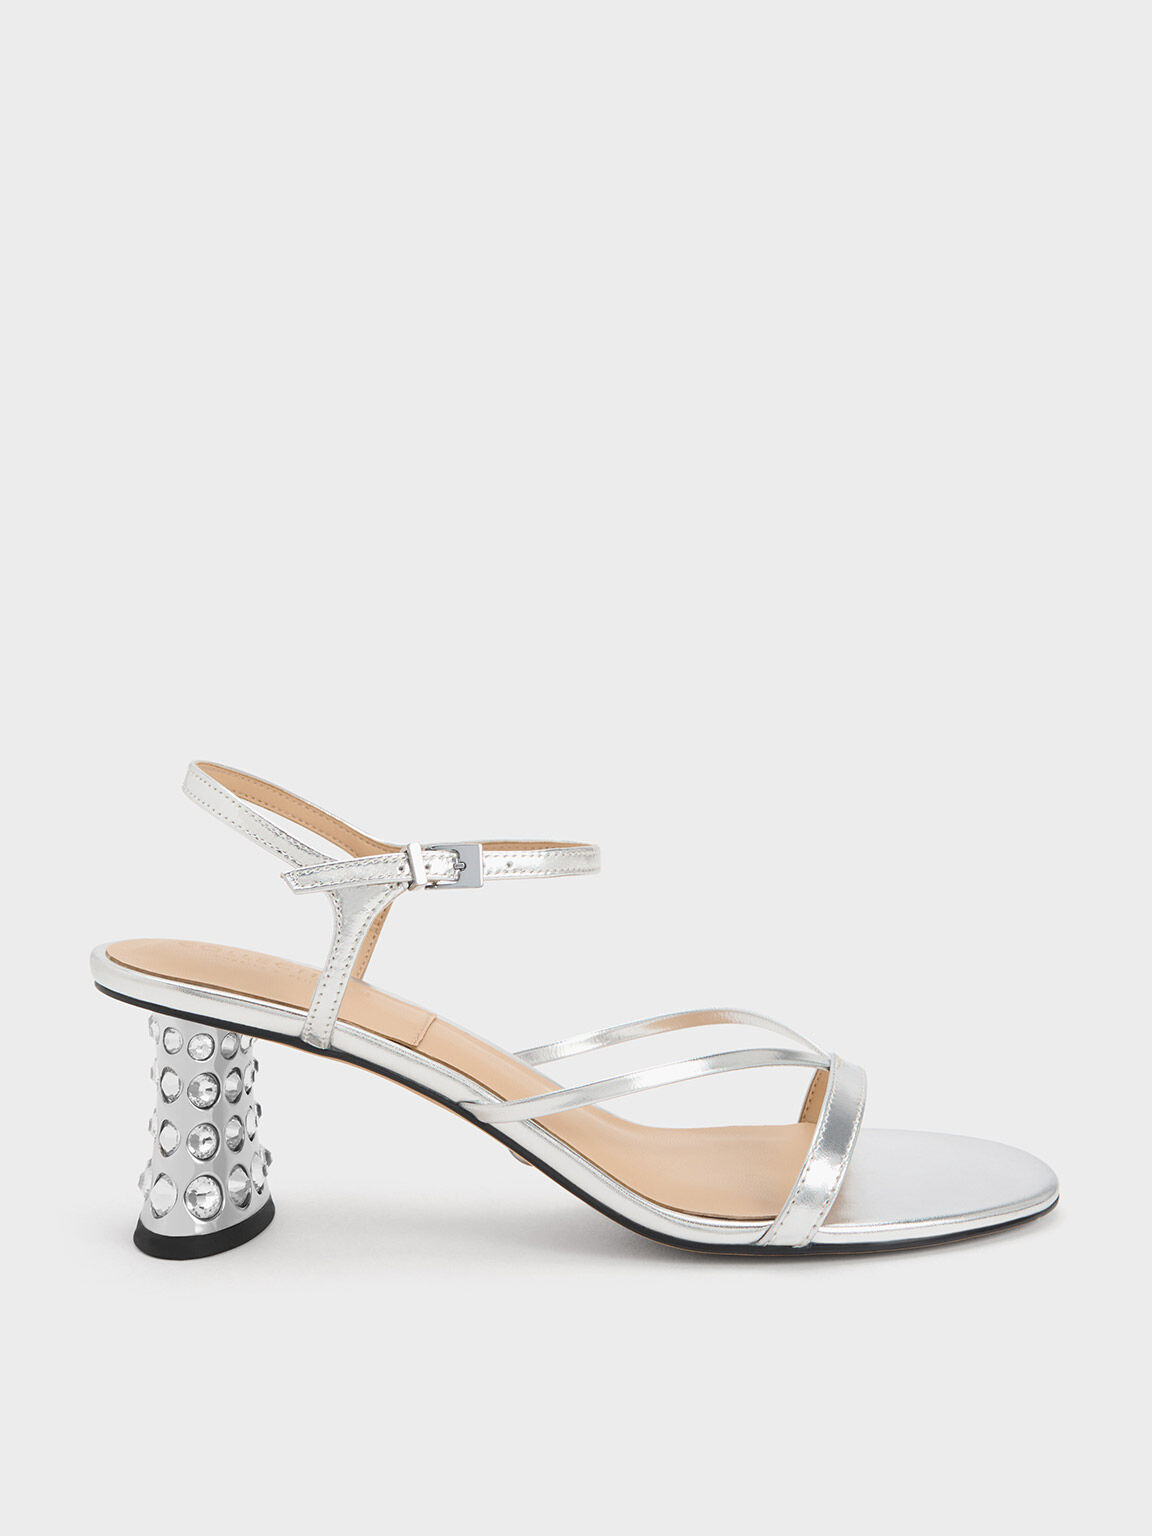 Gem-Embellished Metallic Strappy Sandals, Silver, hi-res